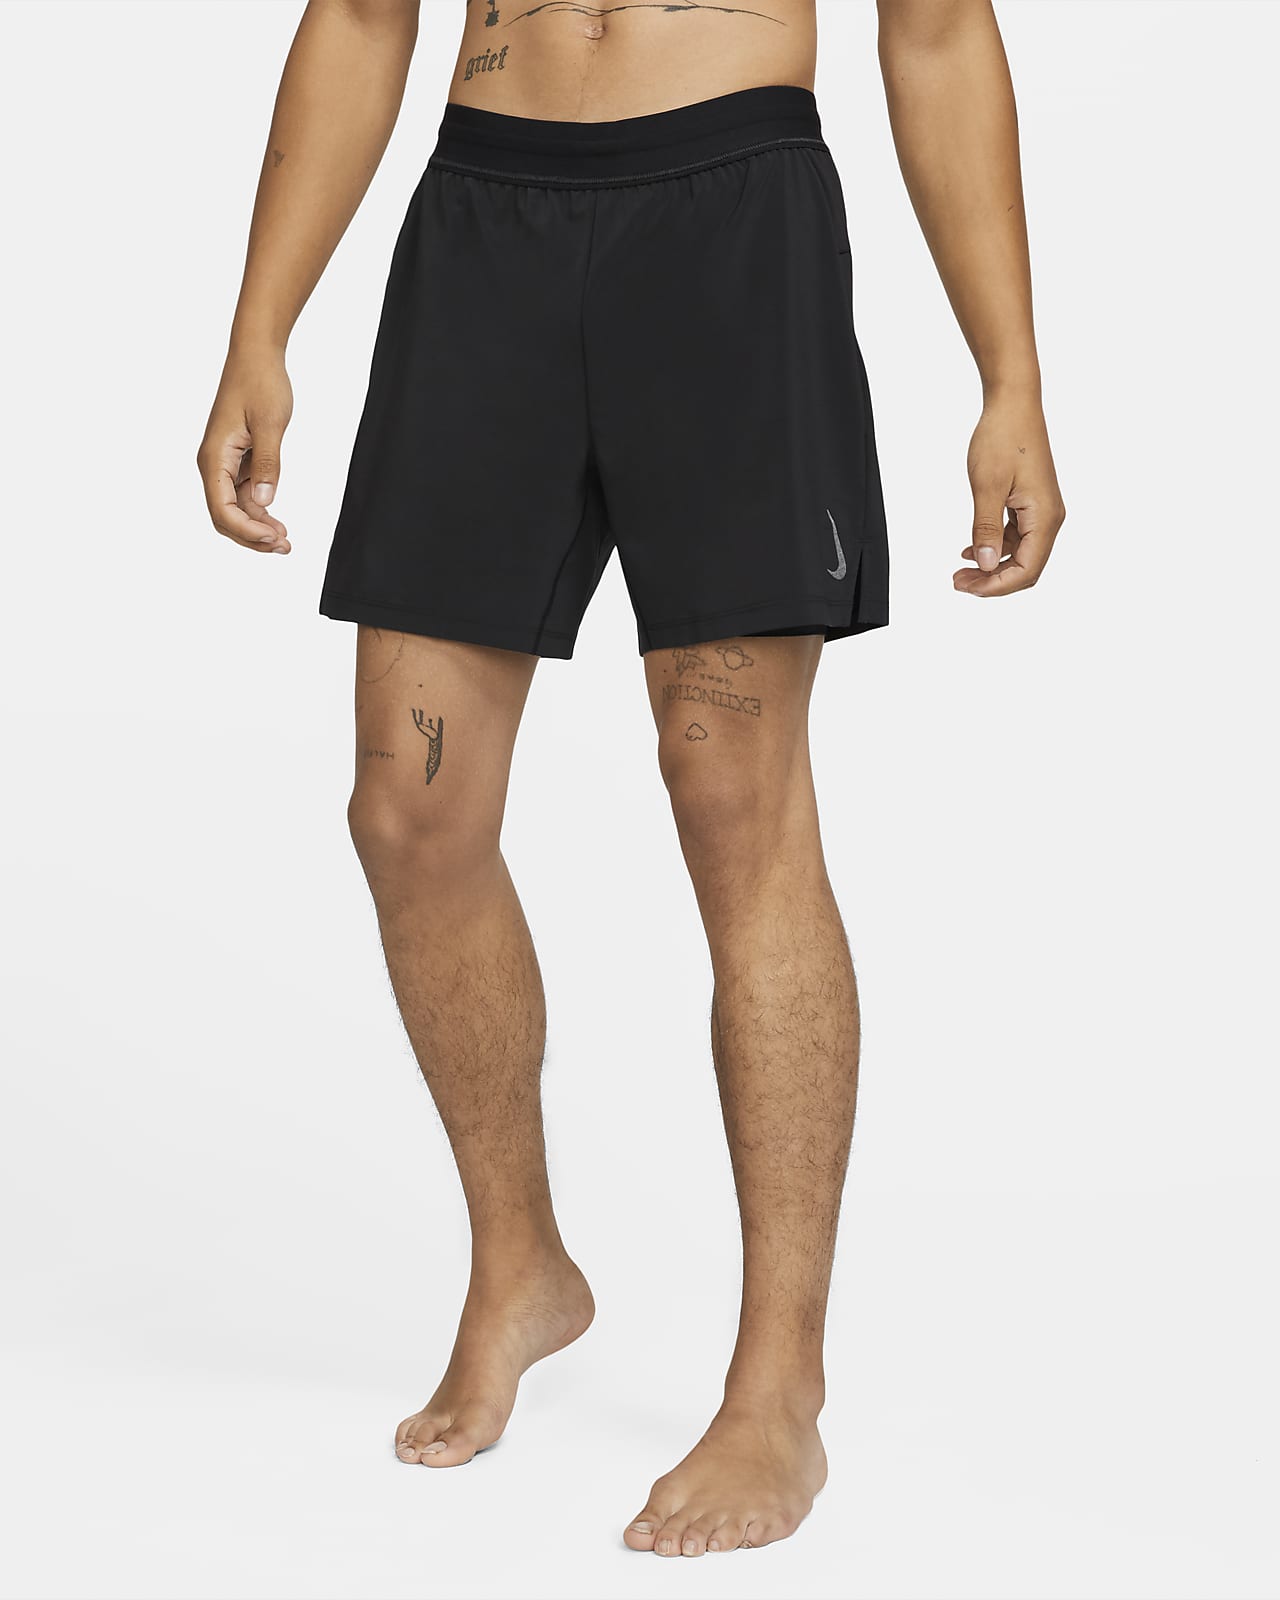 Nike Yoga Pantalons curts 2 en 1 - Home